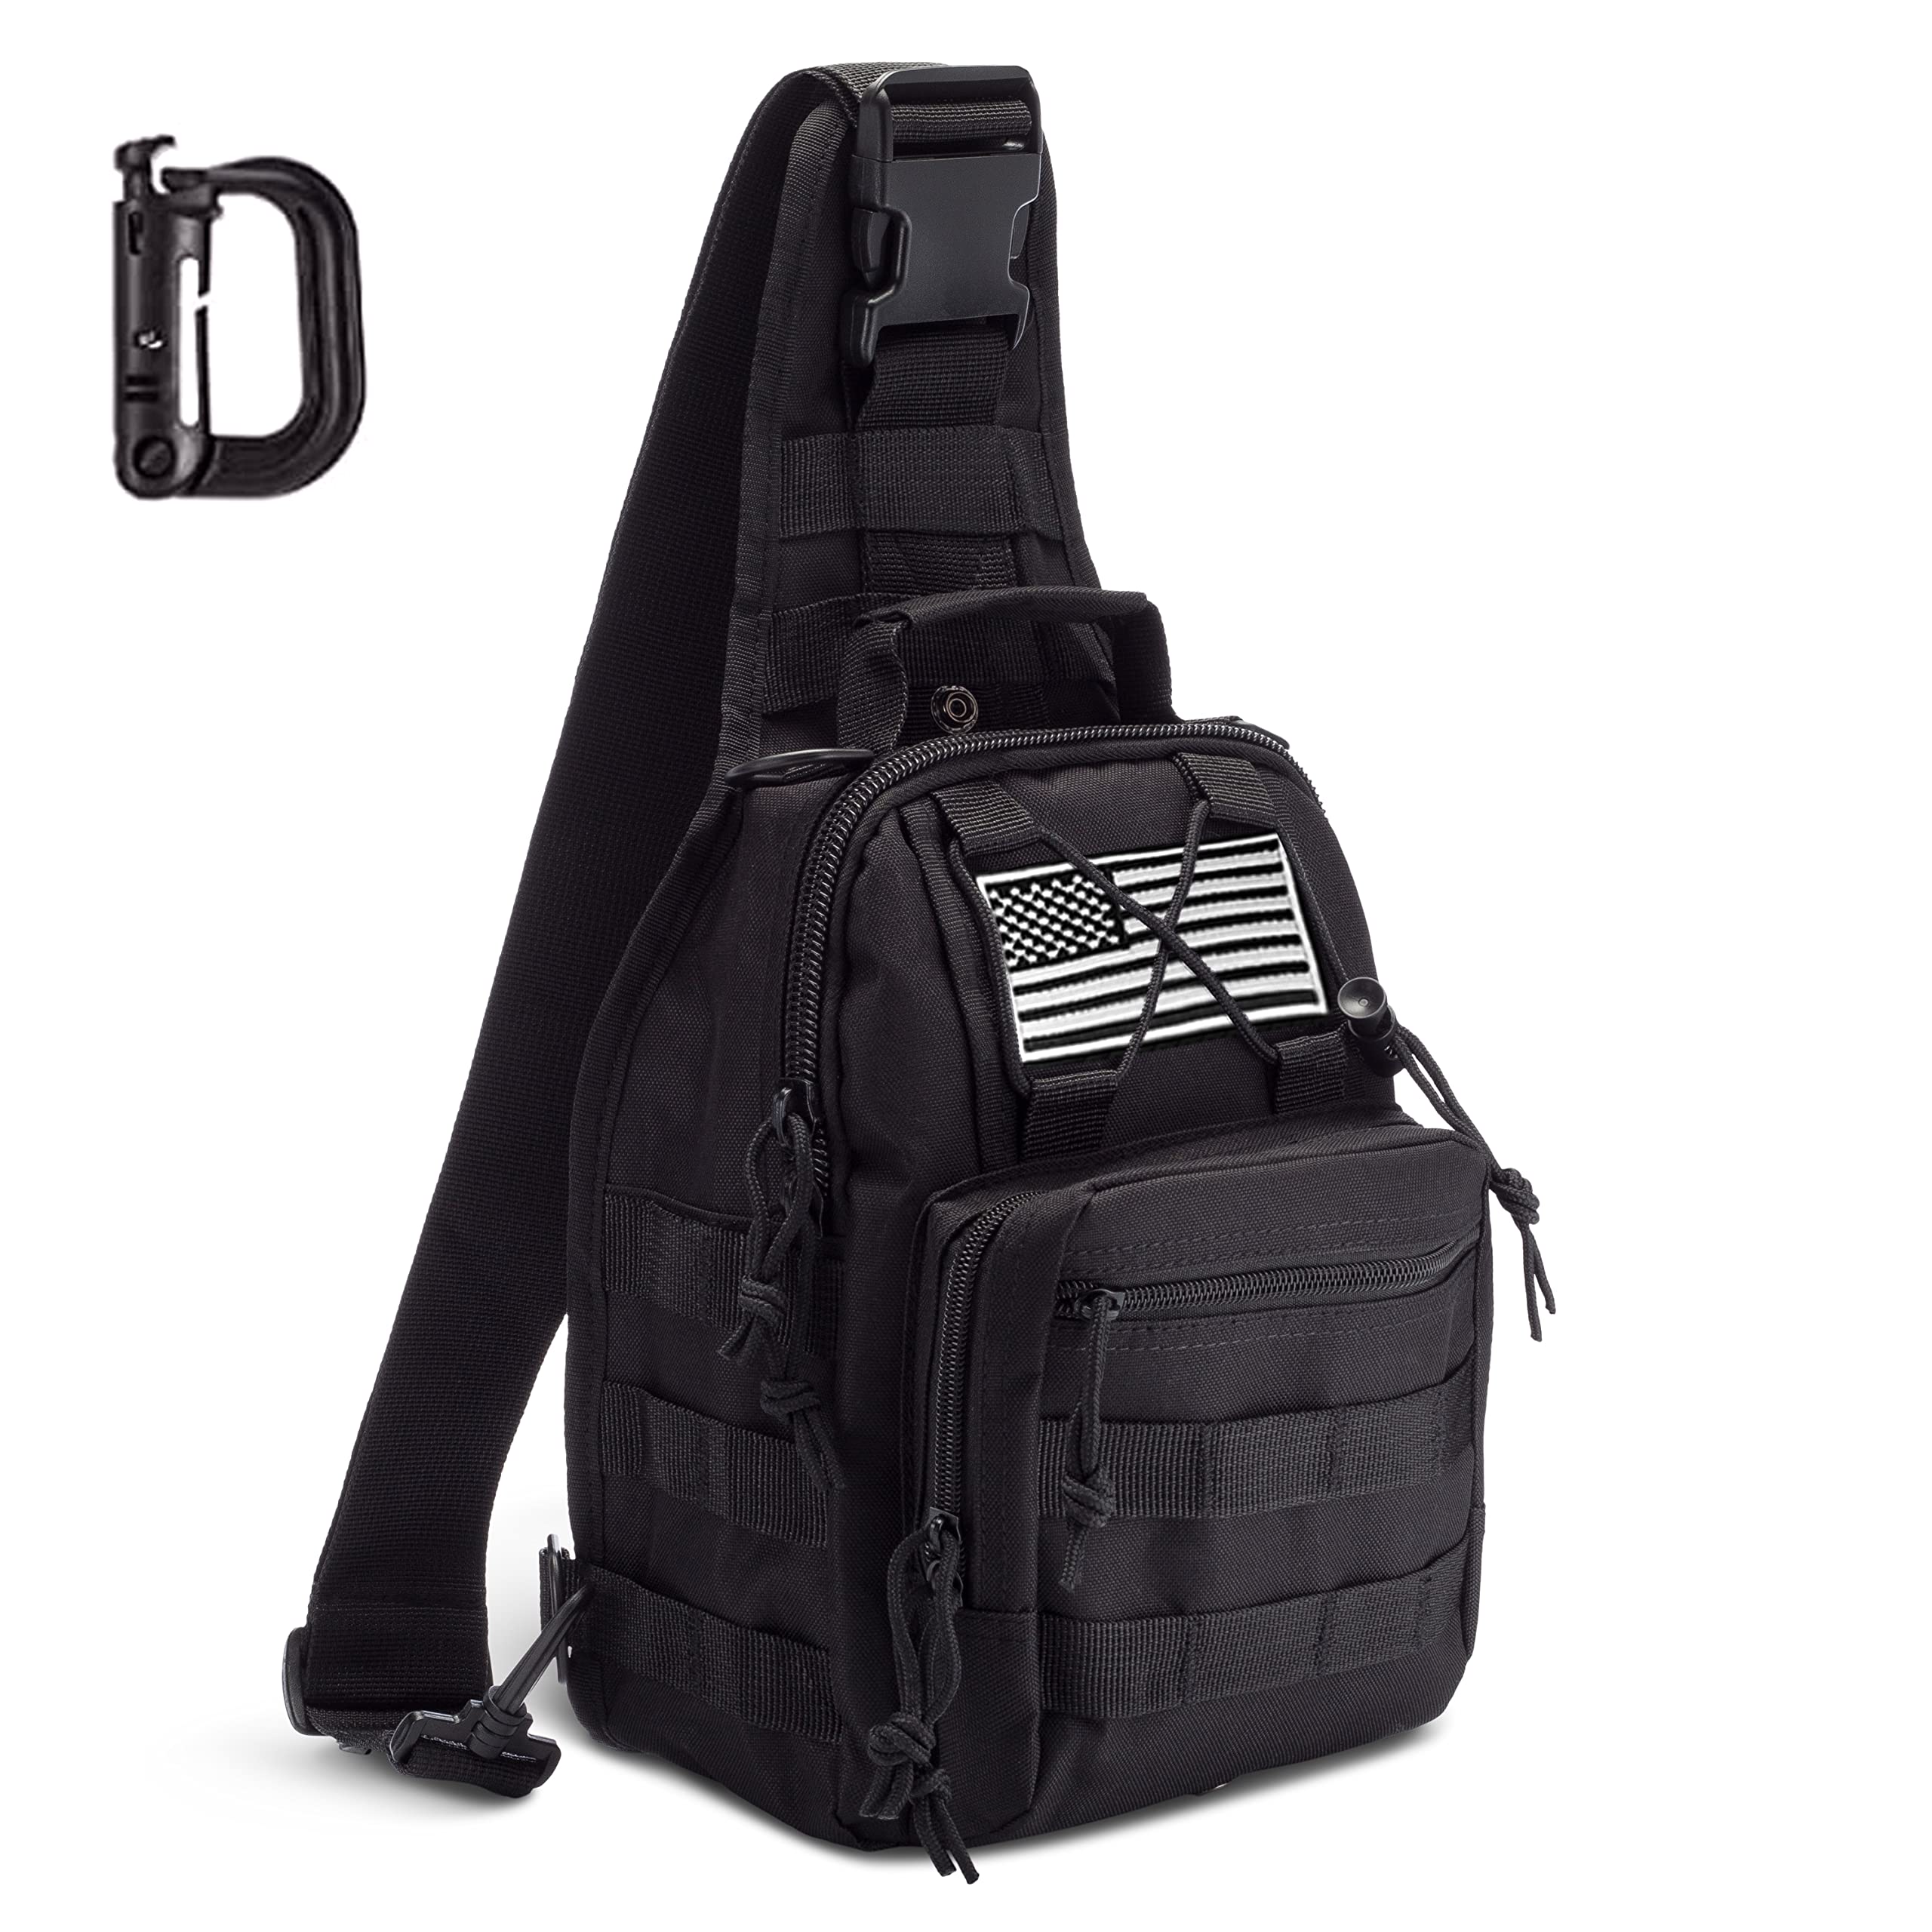 Mullet Dragon Tactical Sling Bag for Men Black EDC Small Backpack